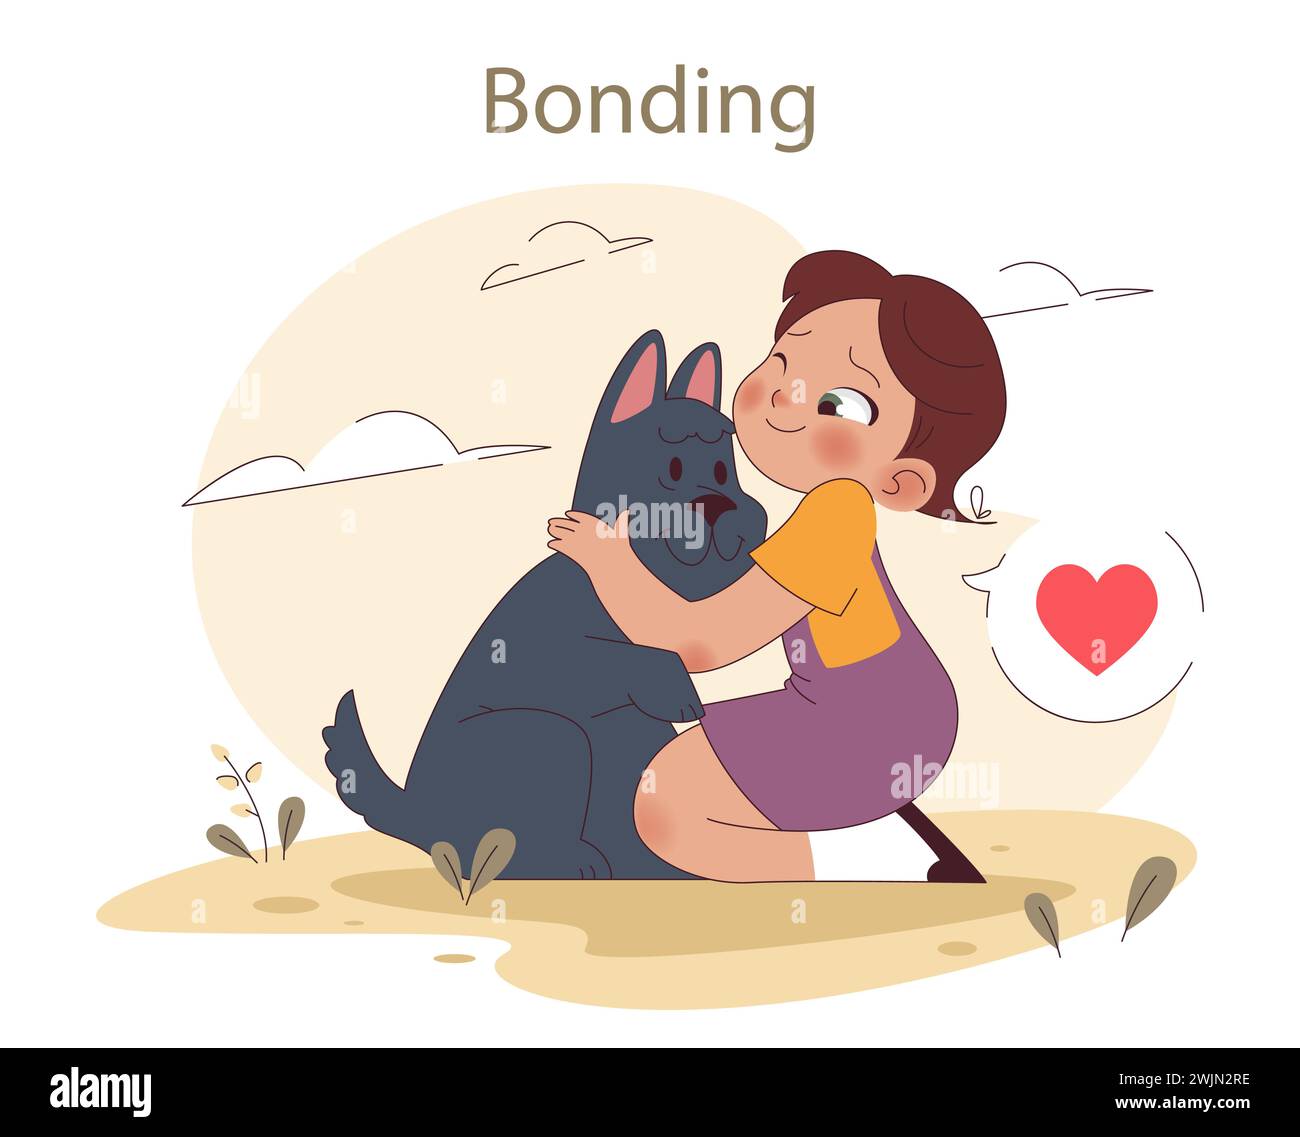 Verbindungskonzept. Ein Mädchen umarmt ihren Hund liebevoll und zeigt eine innige Verbindung. Wir feiern die Freude der Haustierbegleitung. Illustration des flachen Vektors Stock Vektor